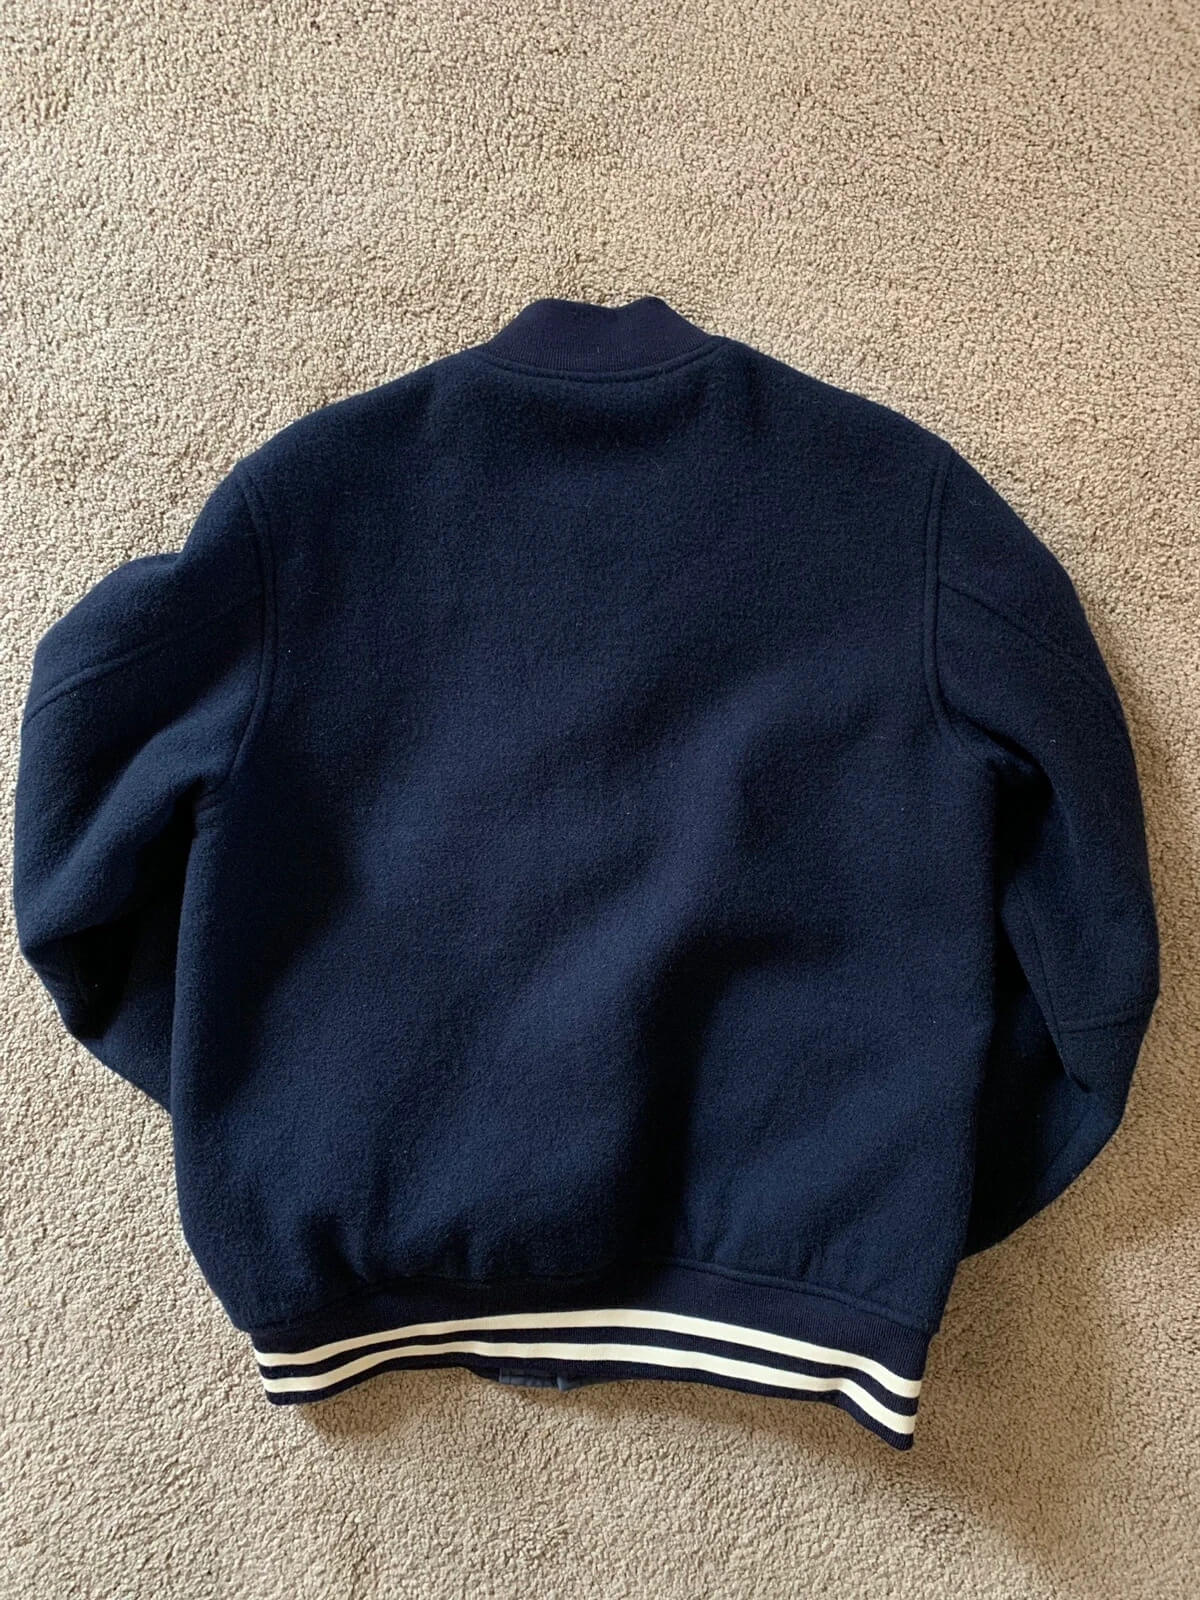 Navy Blue Letterman Jacket Wool